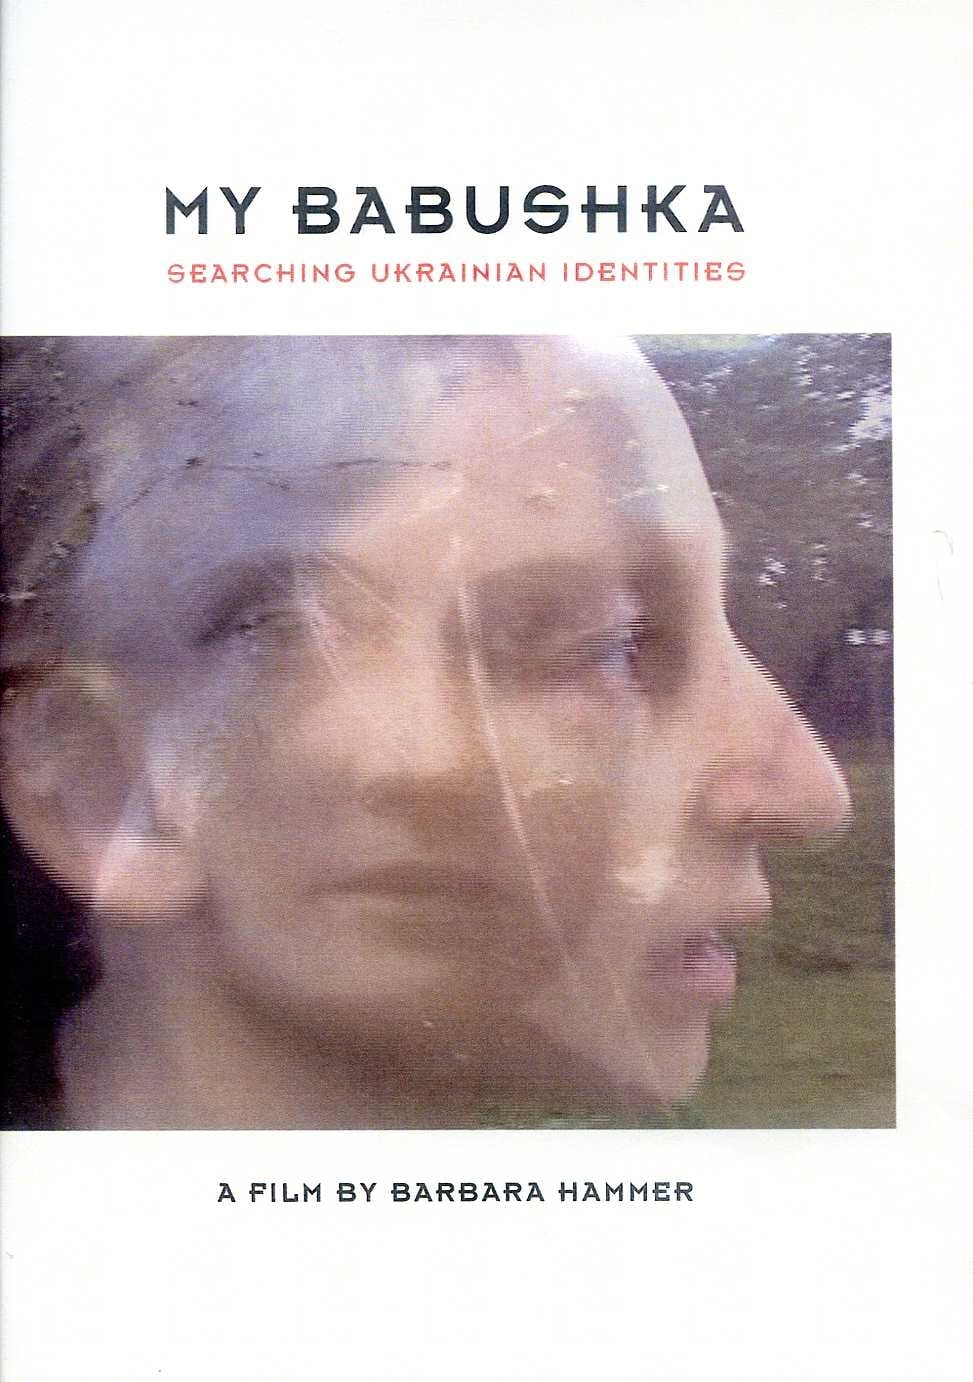 My Babushka: Searching Ukrainian Identities